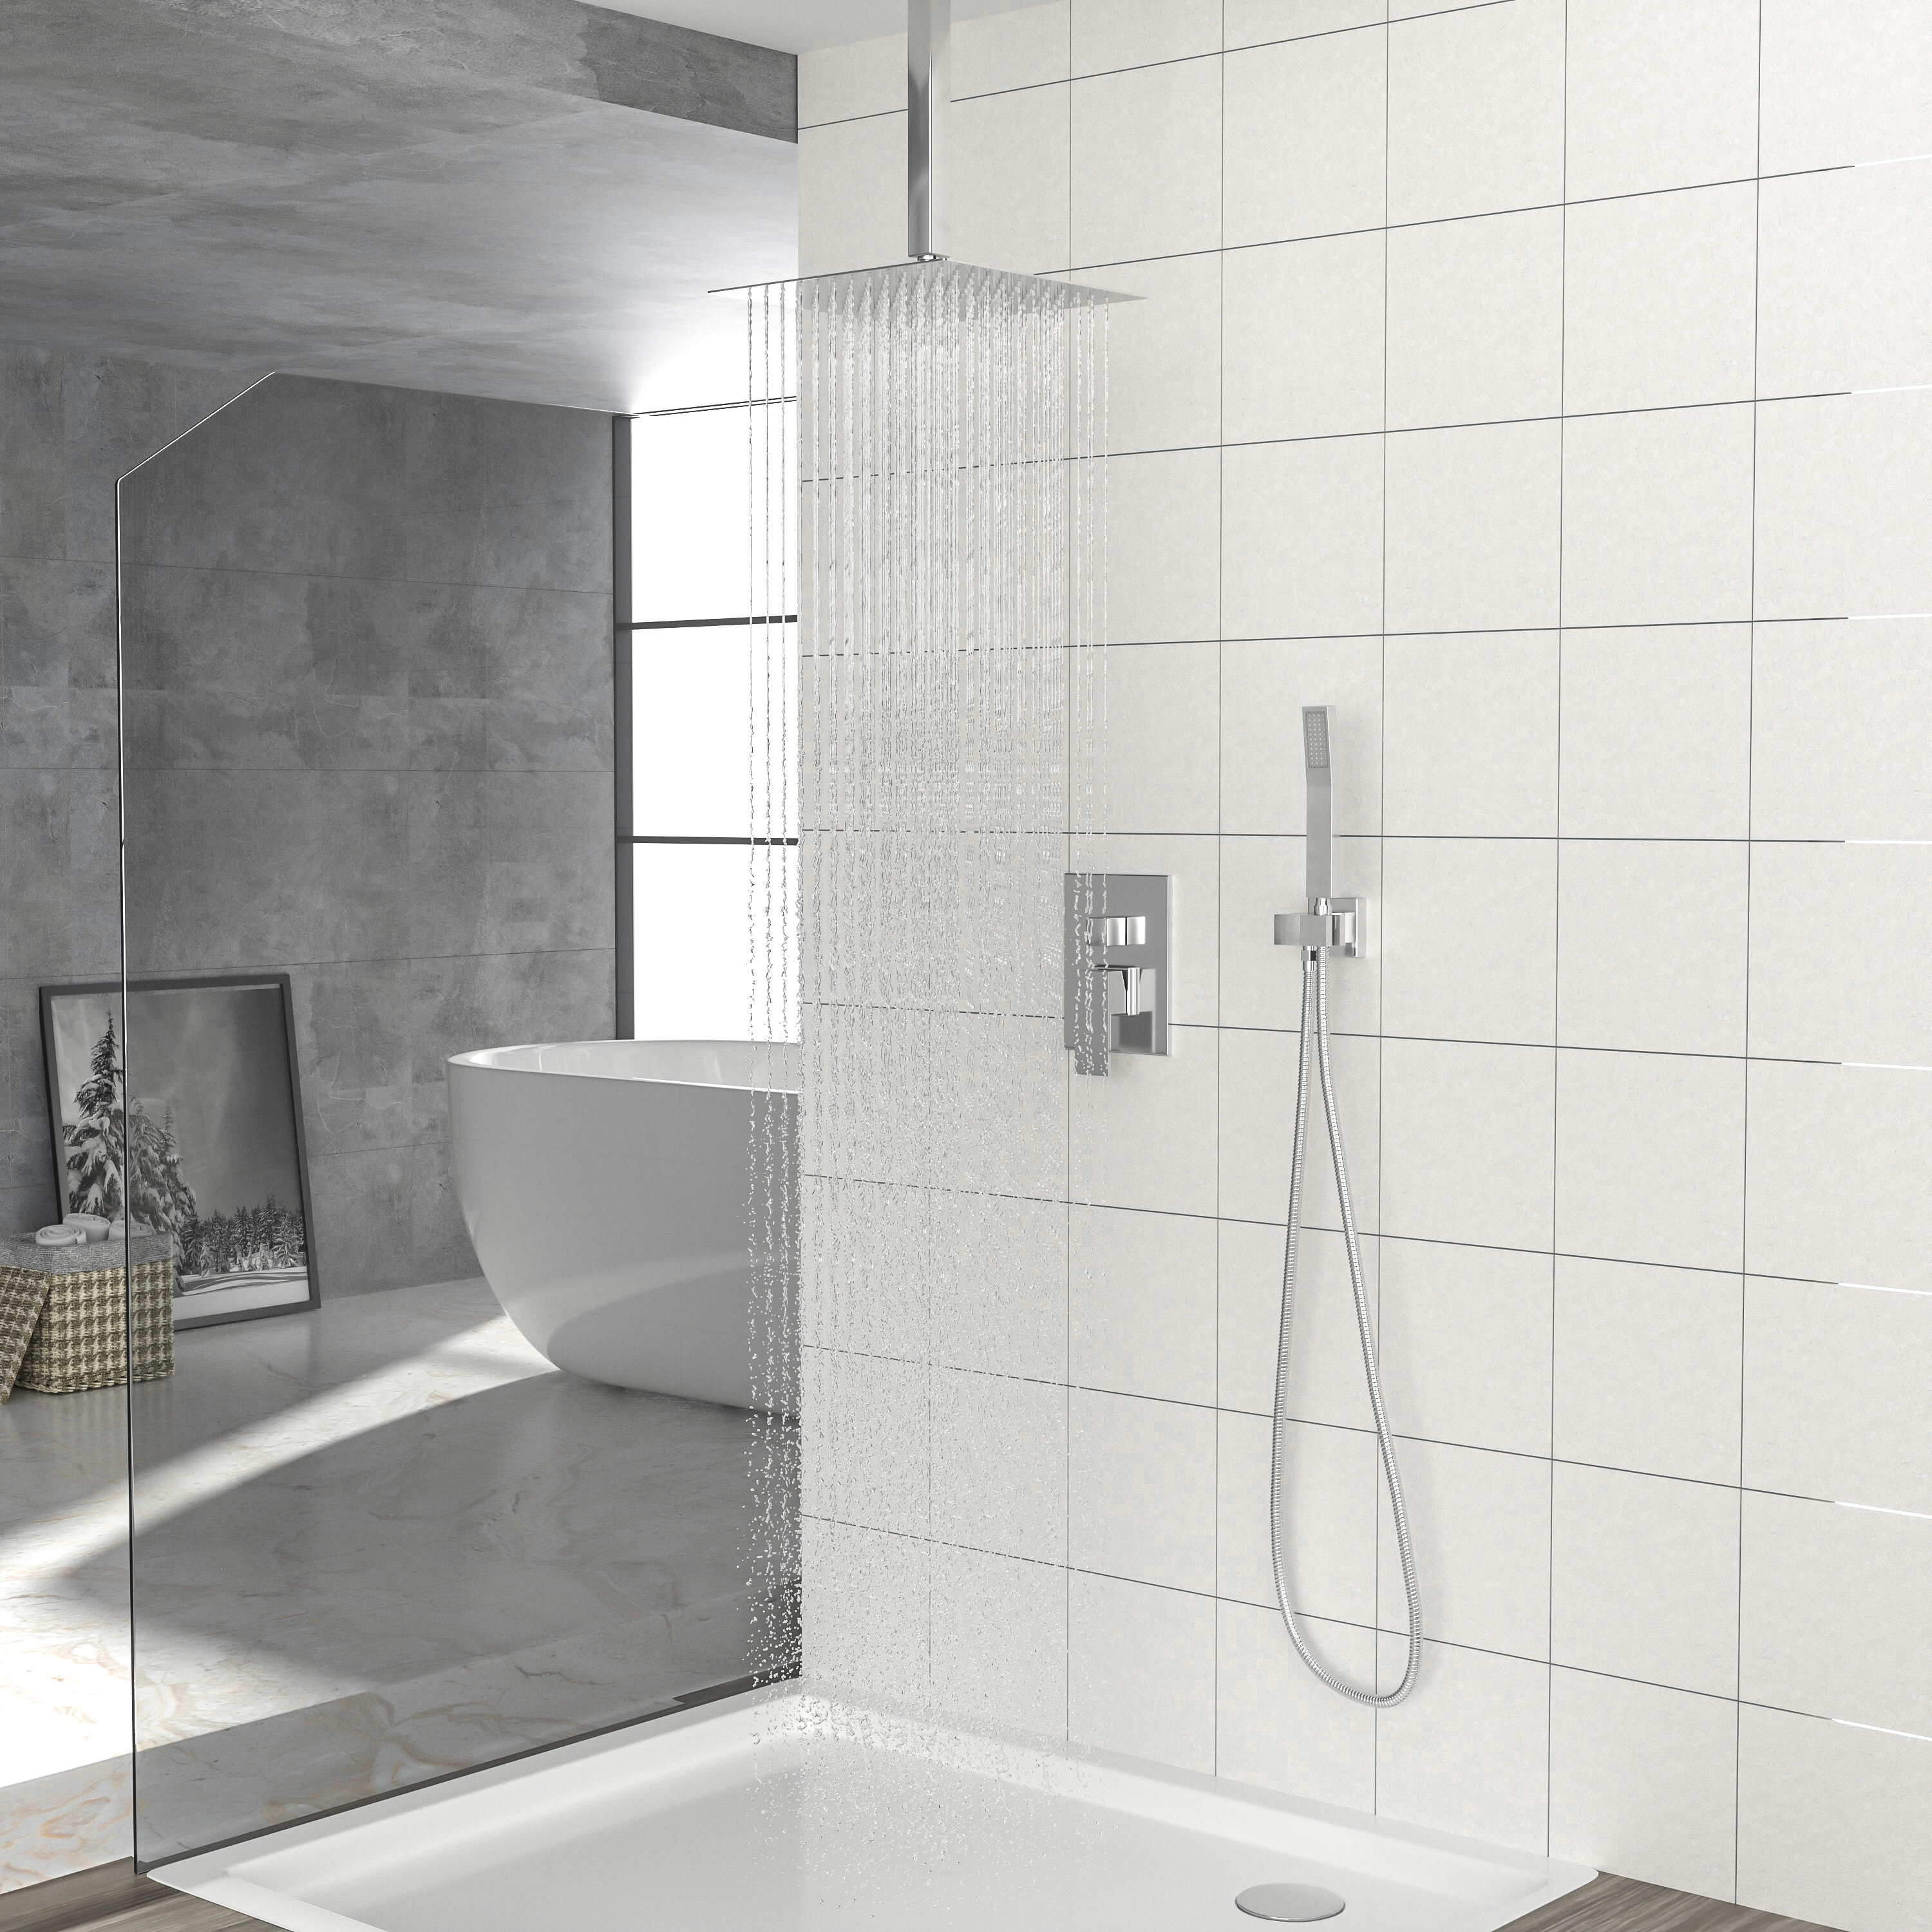 Black Square Bathroom Shower Faucet Set Rain Spout Ceiling/Wall Mount Mixer Tap